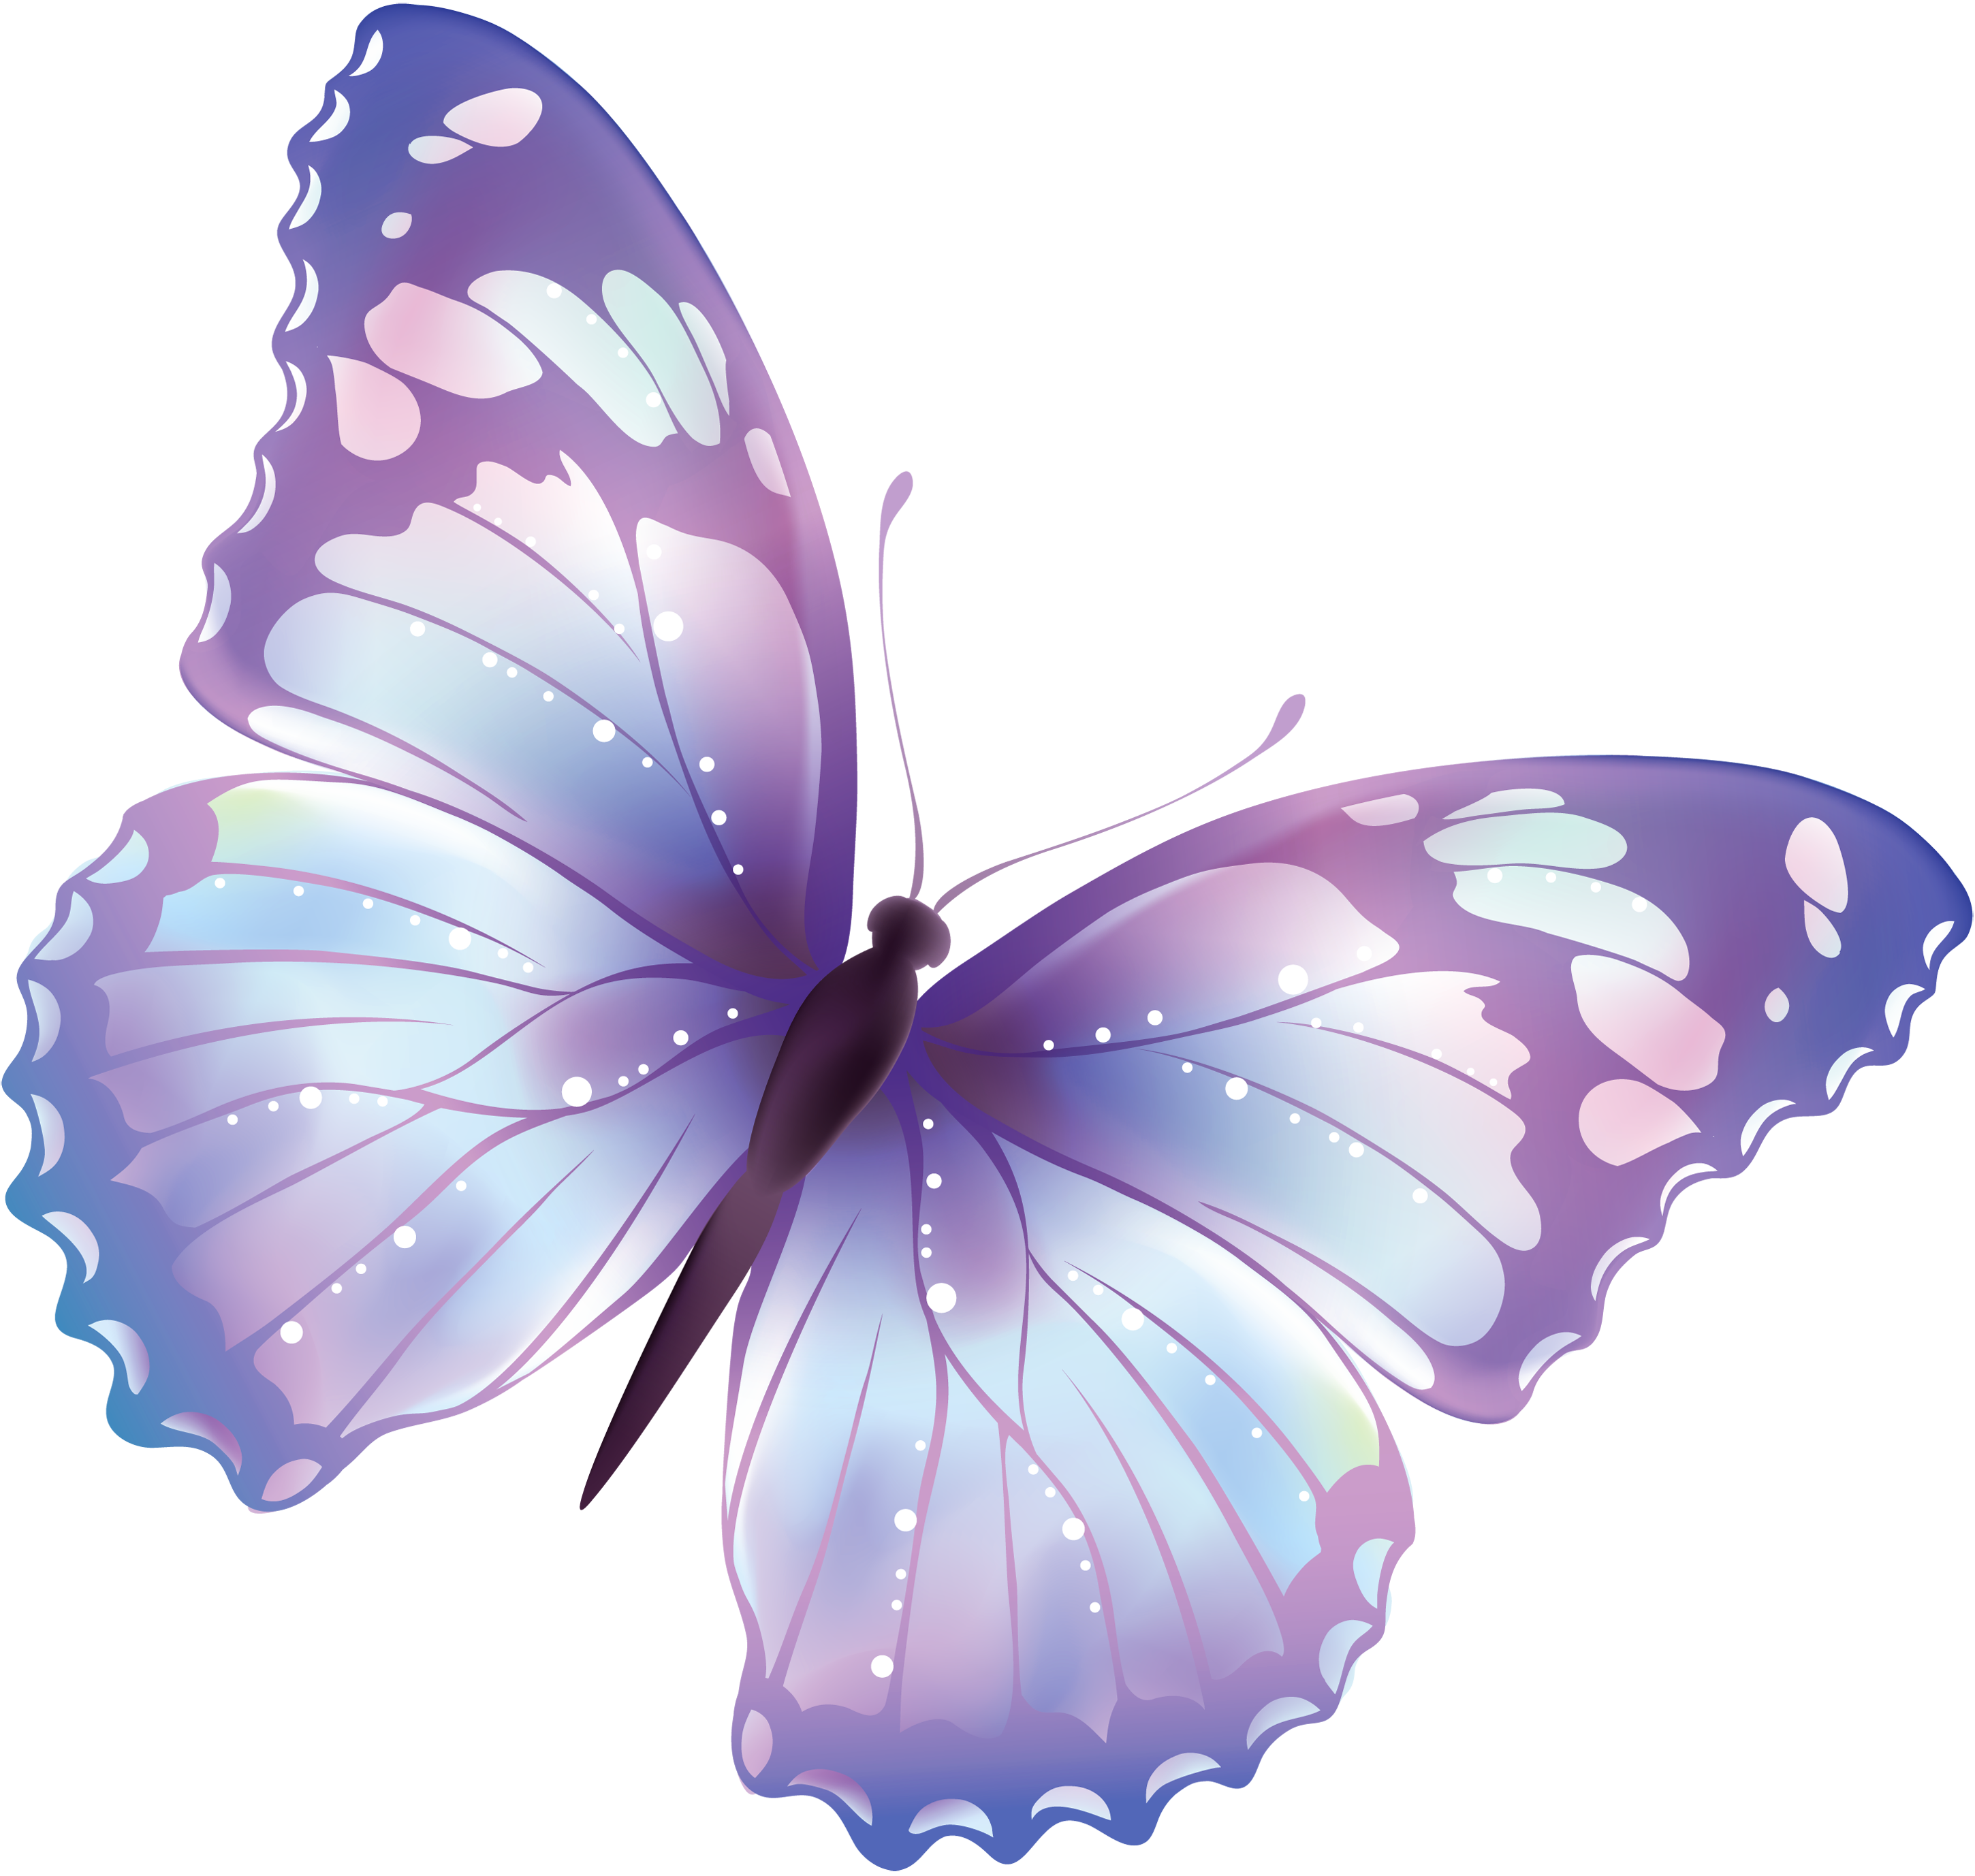 Papillons Télécharger limage PNG Transparente